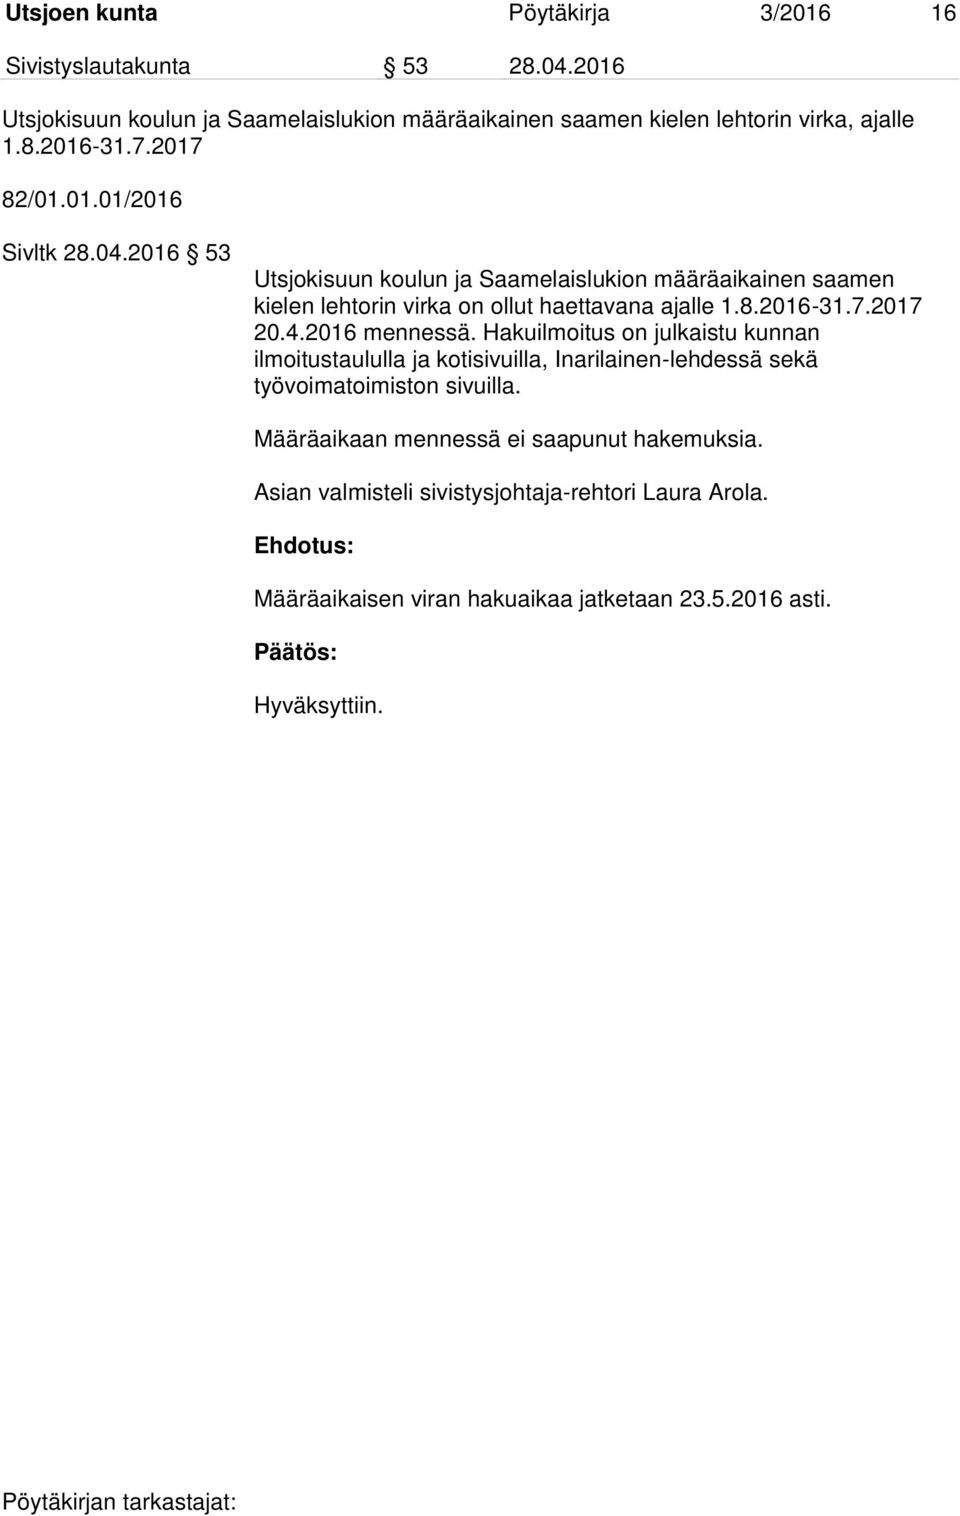 2016 53 Utsjokisuun koulun ja Saamelaislukion määräaikainen saamen kielen lehtorin virka on ollut haettavana ajalle 1.8.2016-31.7.2017 20.4.2016 mennessä.